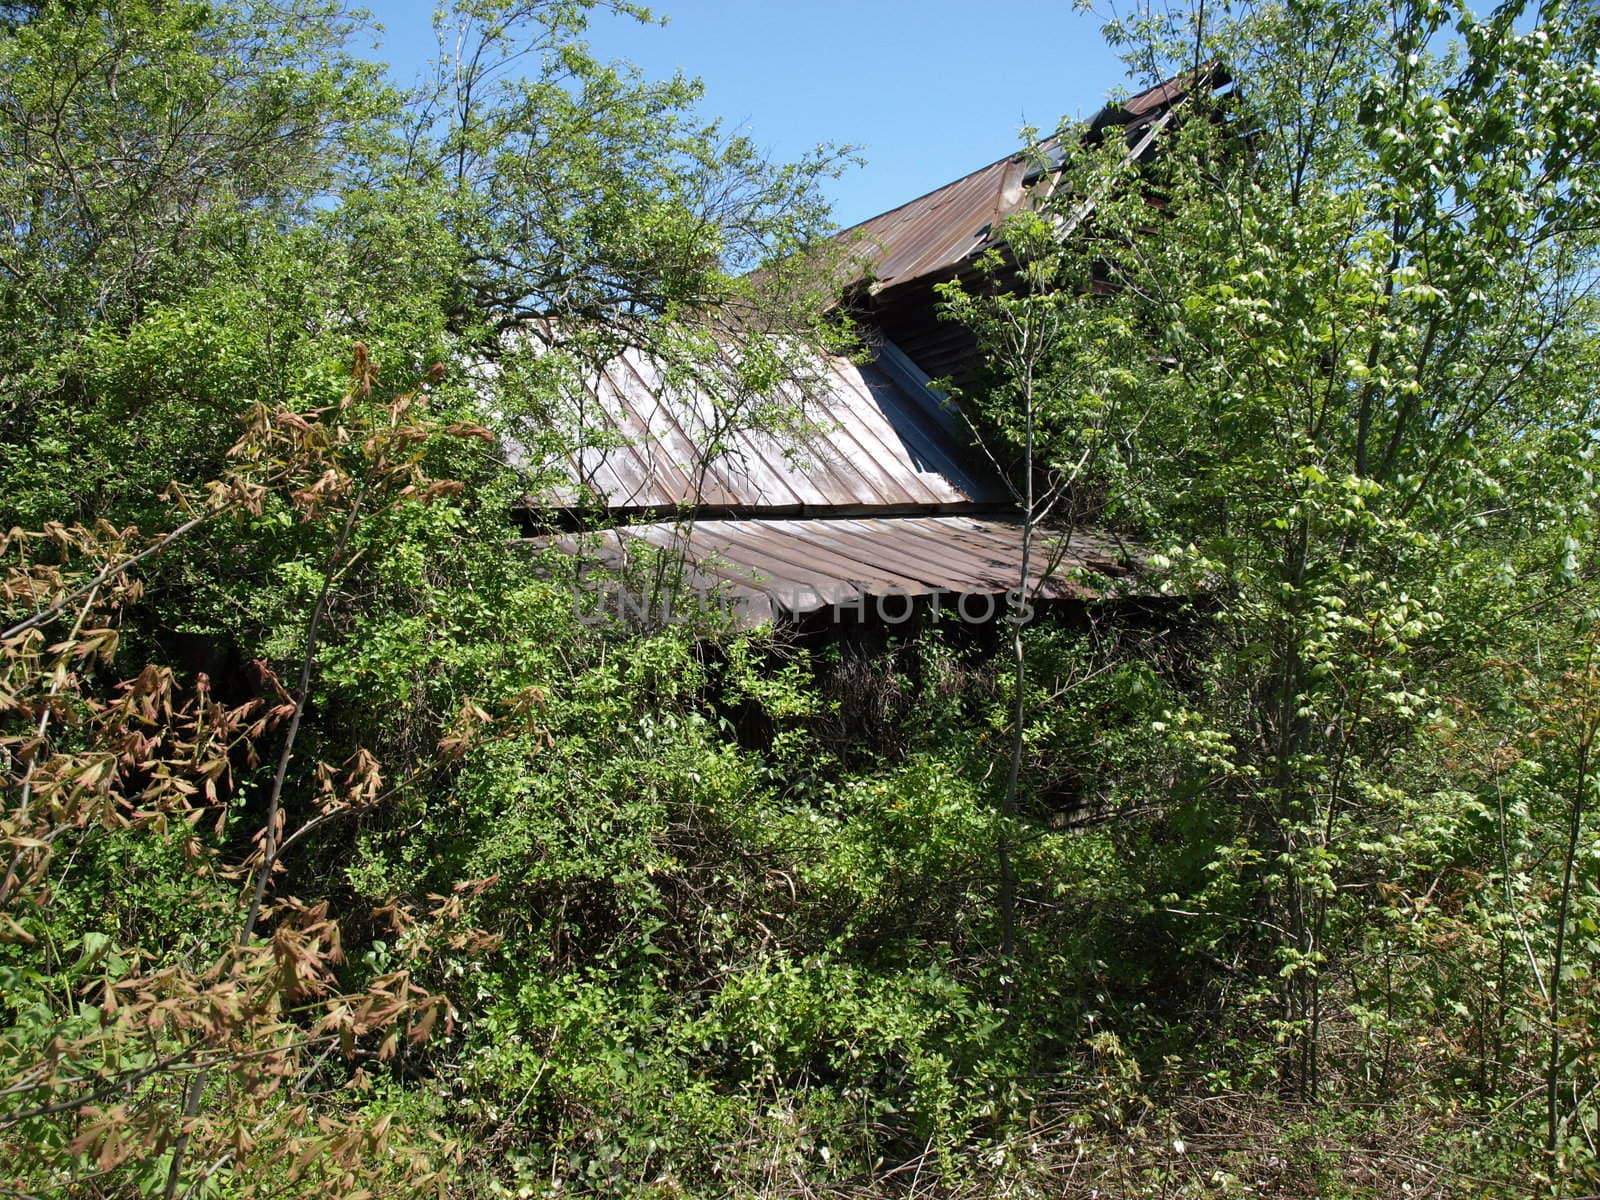 An old hidden barn in rural North Carolina